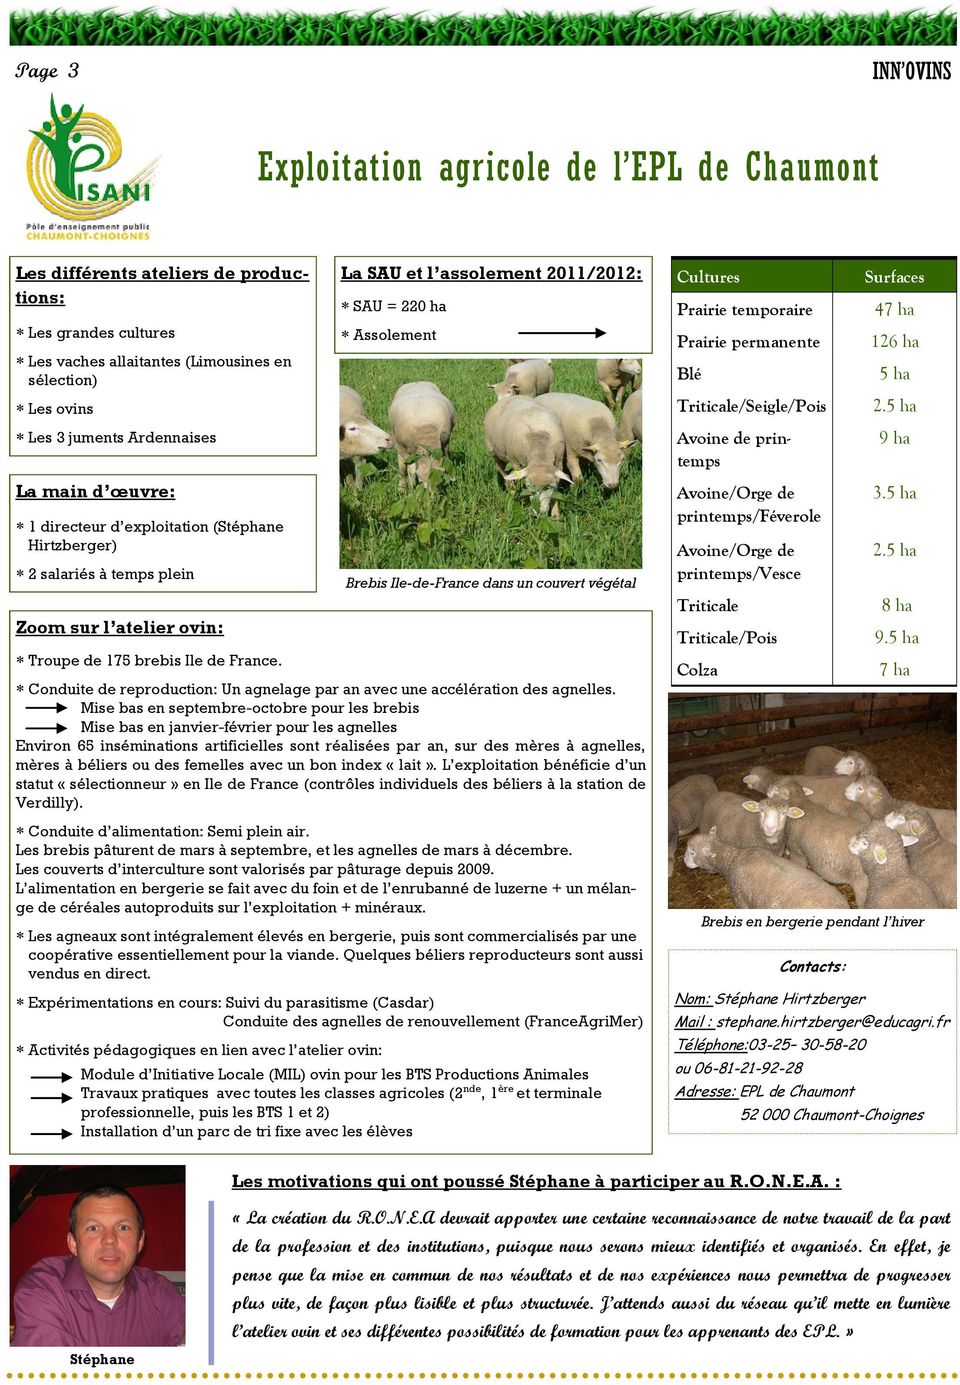 Mise bas en septembre-octobre pour les brebis Mise bas en janvier-février pour les agnelles Environ 65 inséminations artificielles sont réalisées par an, sur des mères à agnelles, mères à béliers ou